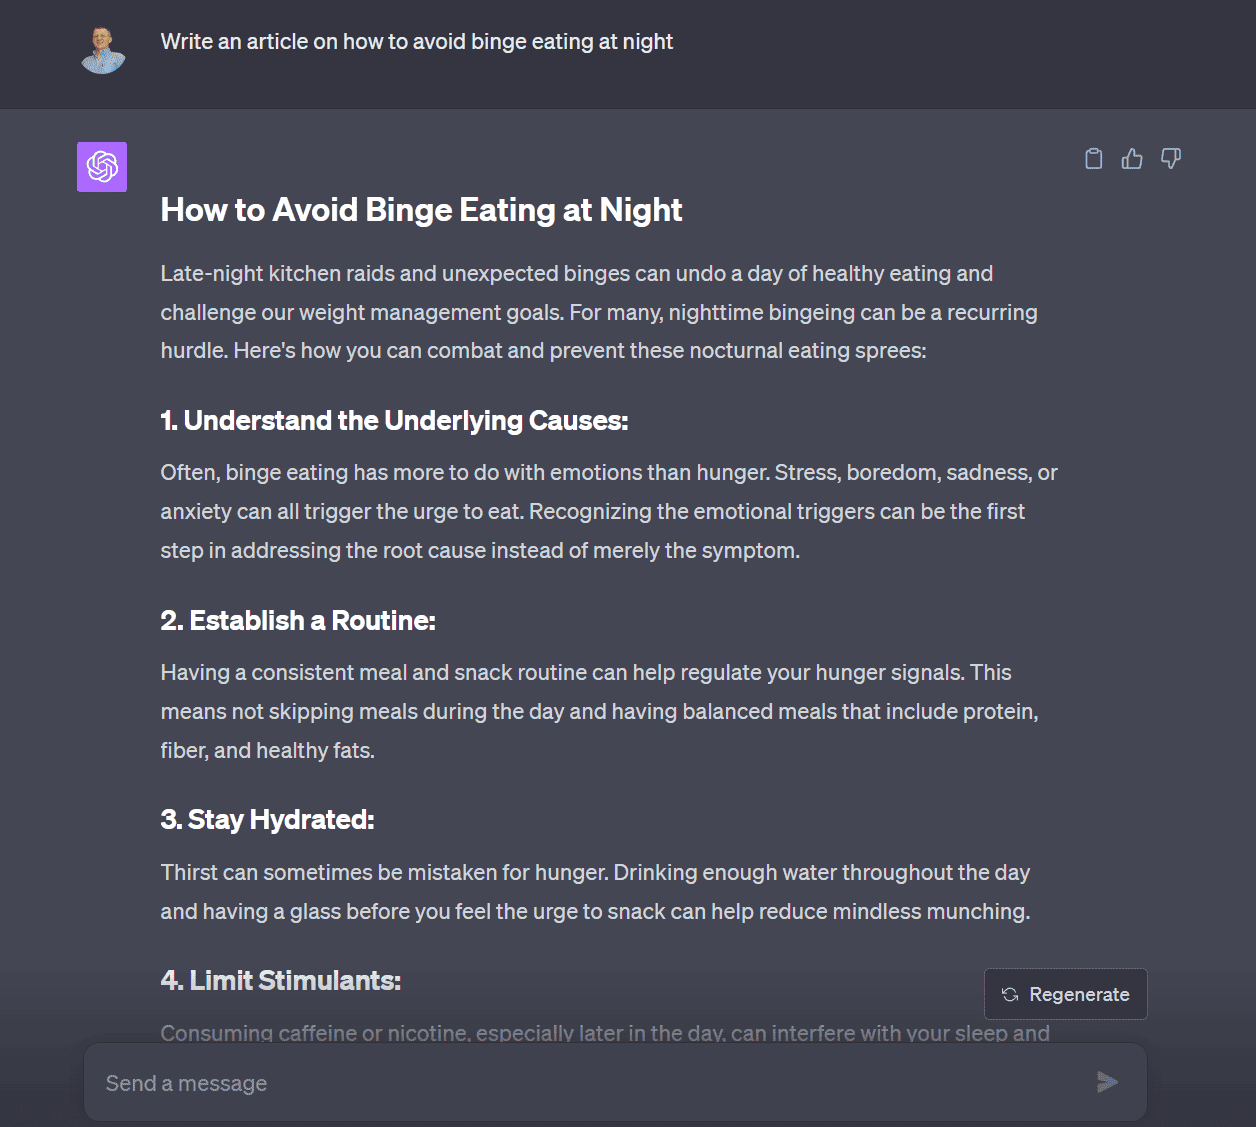 ChatGPT on how to avoid binge eating